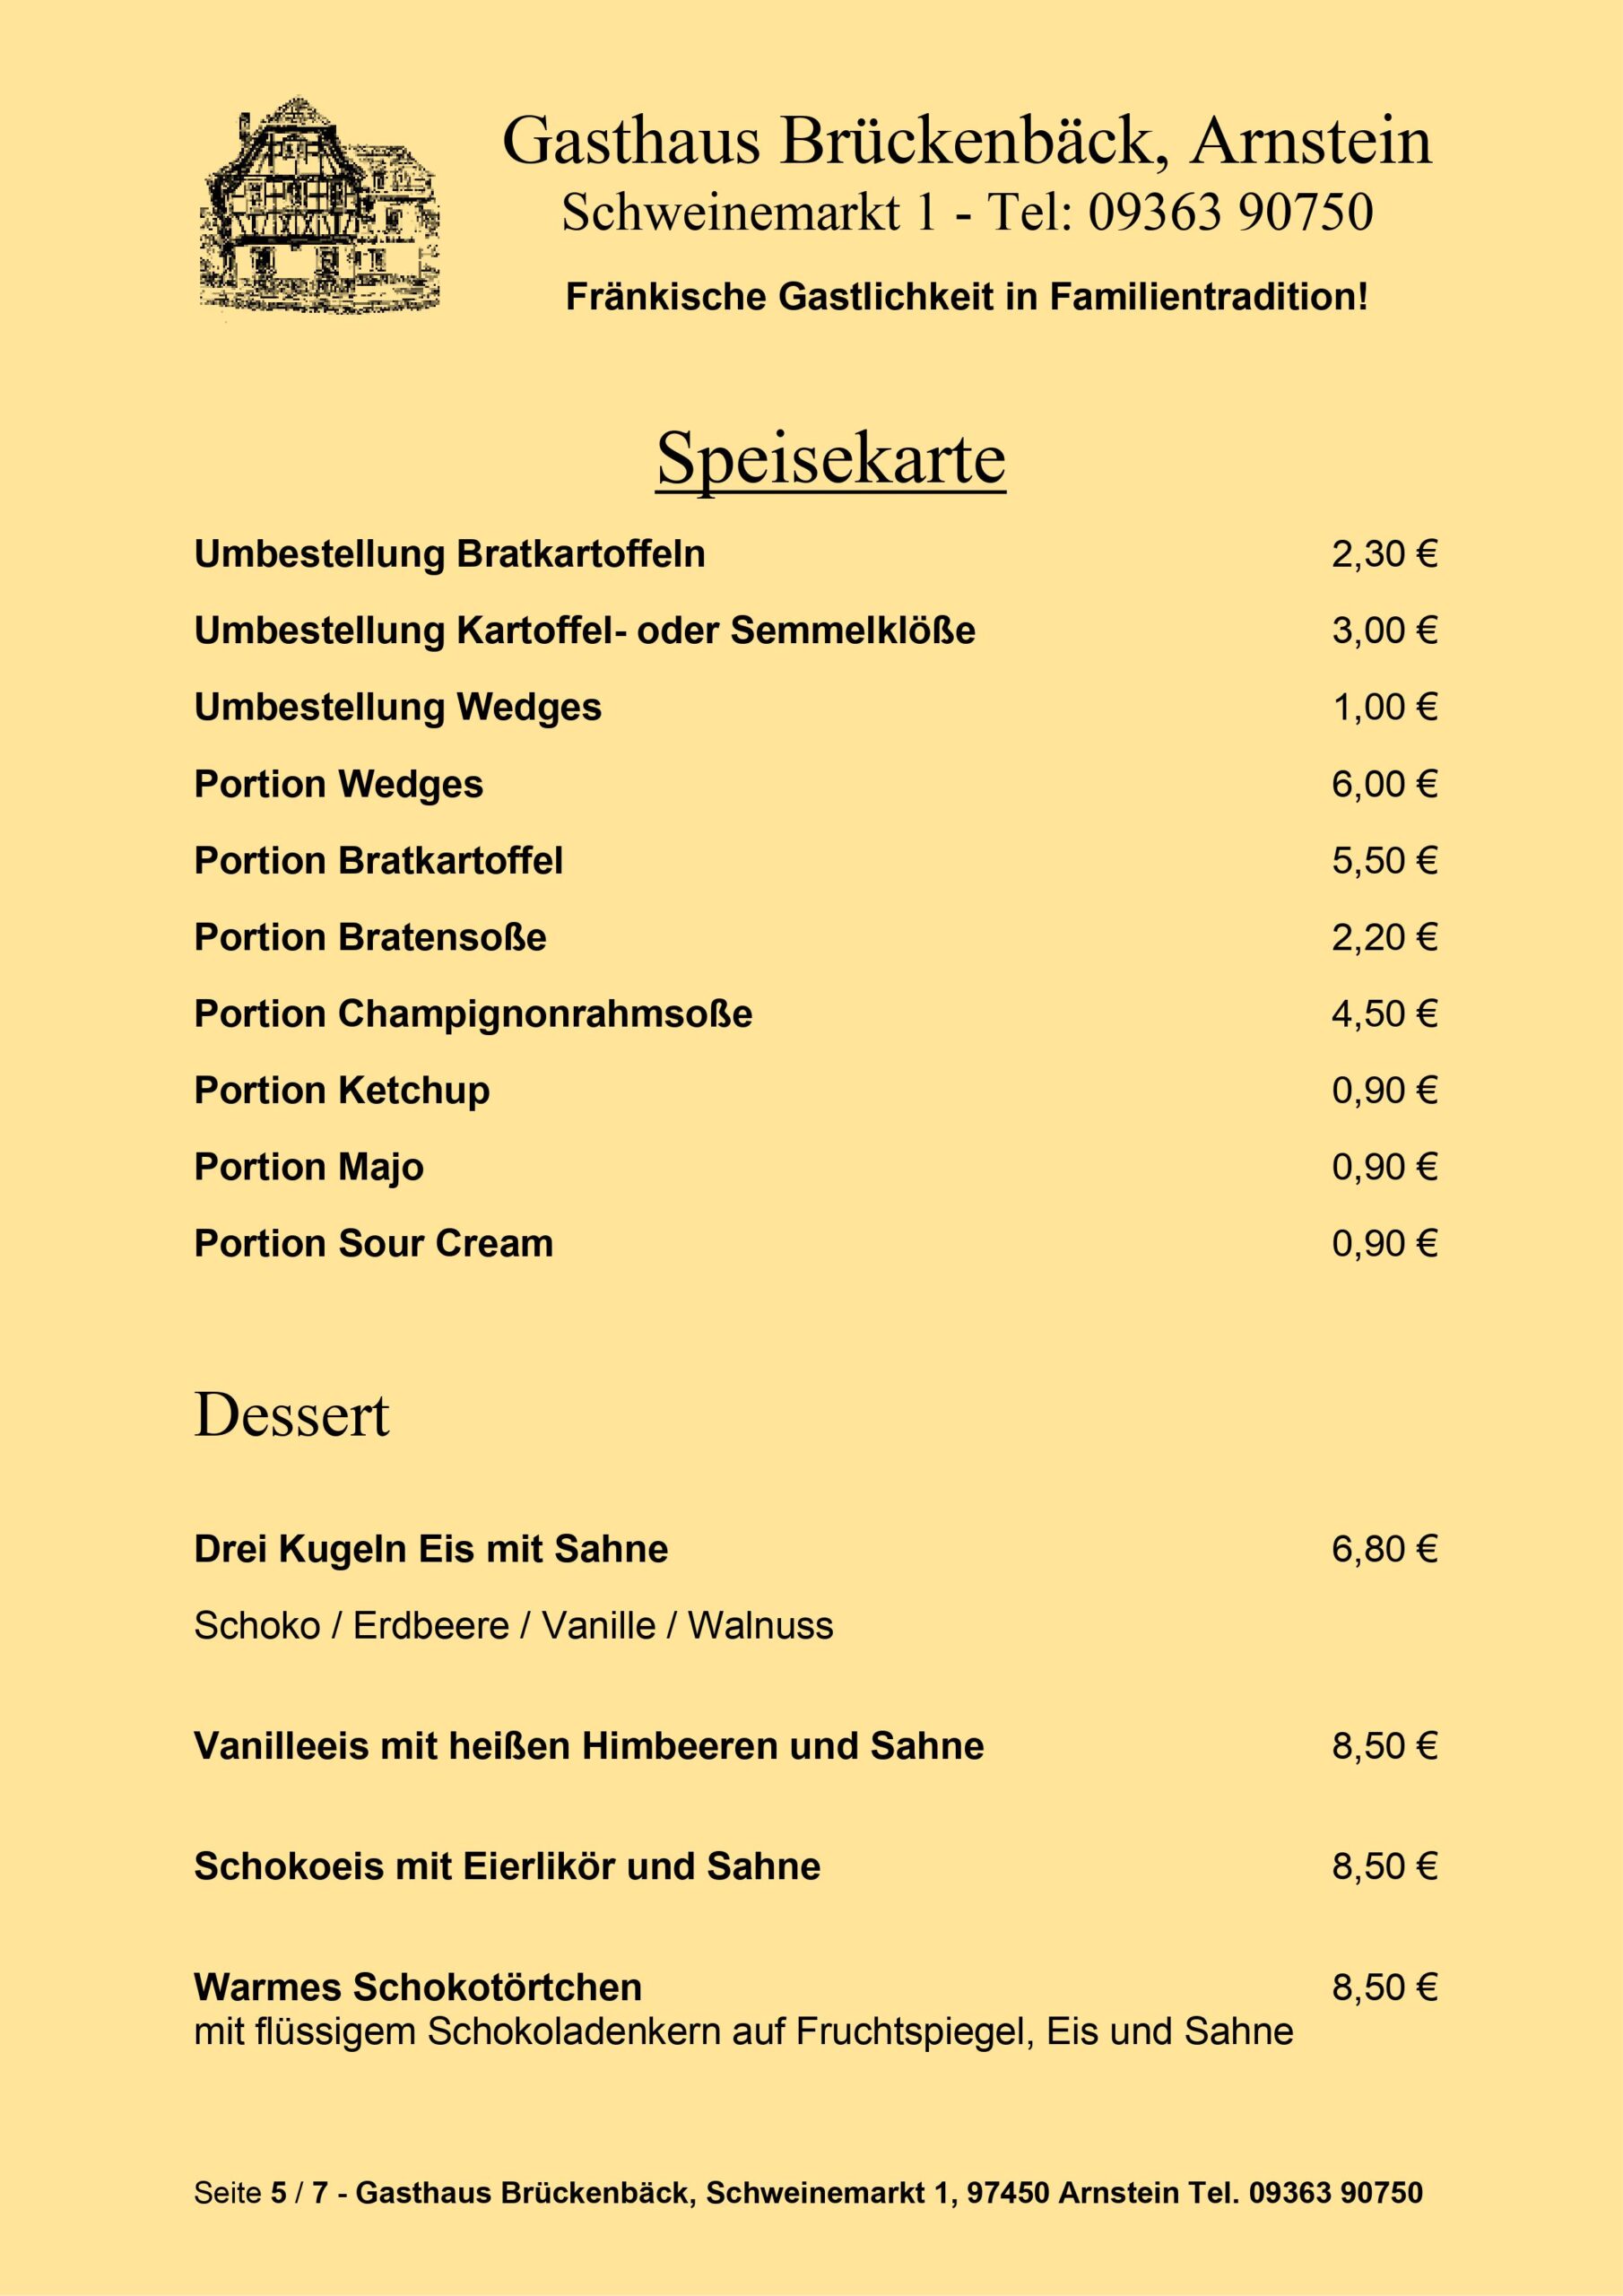 Gasthaus Brückenbäck - Speisekarte Seite 5/7